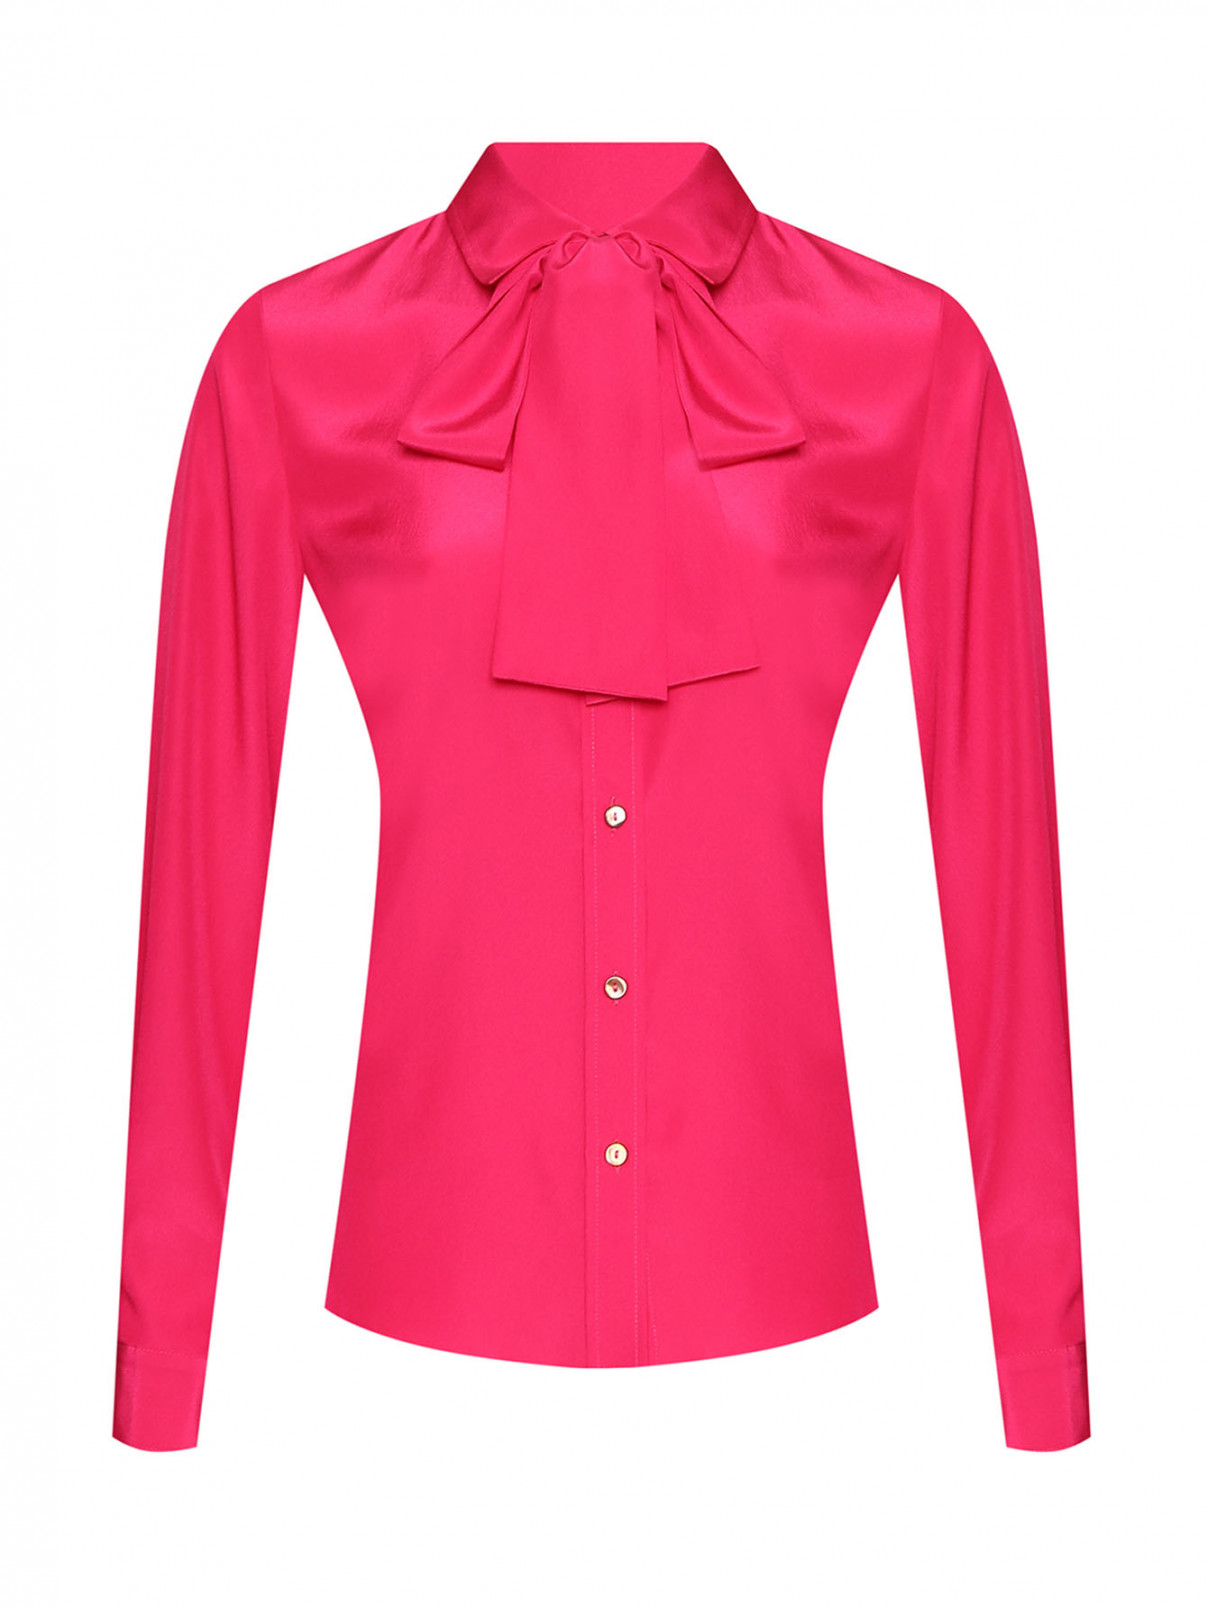 Однотонная блуза на пуговицах P.A.R.O.S.H.  –  Общий вид  – Цвет:  Розовый